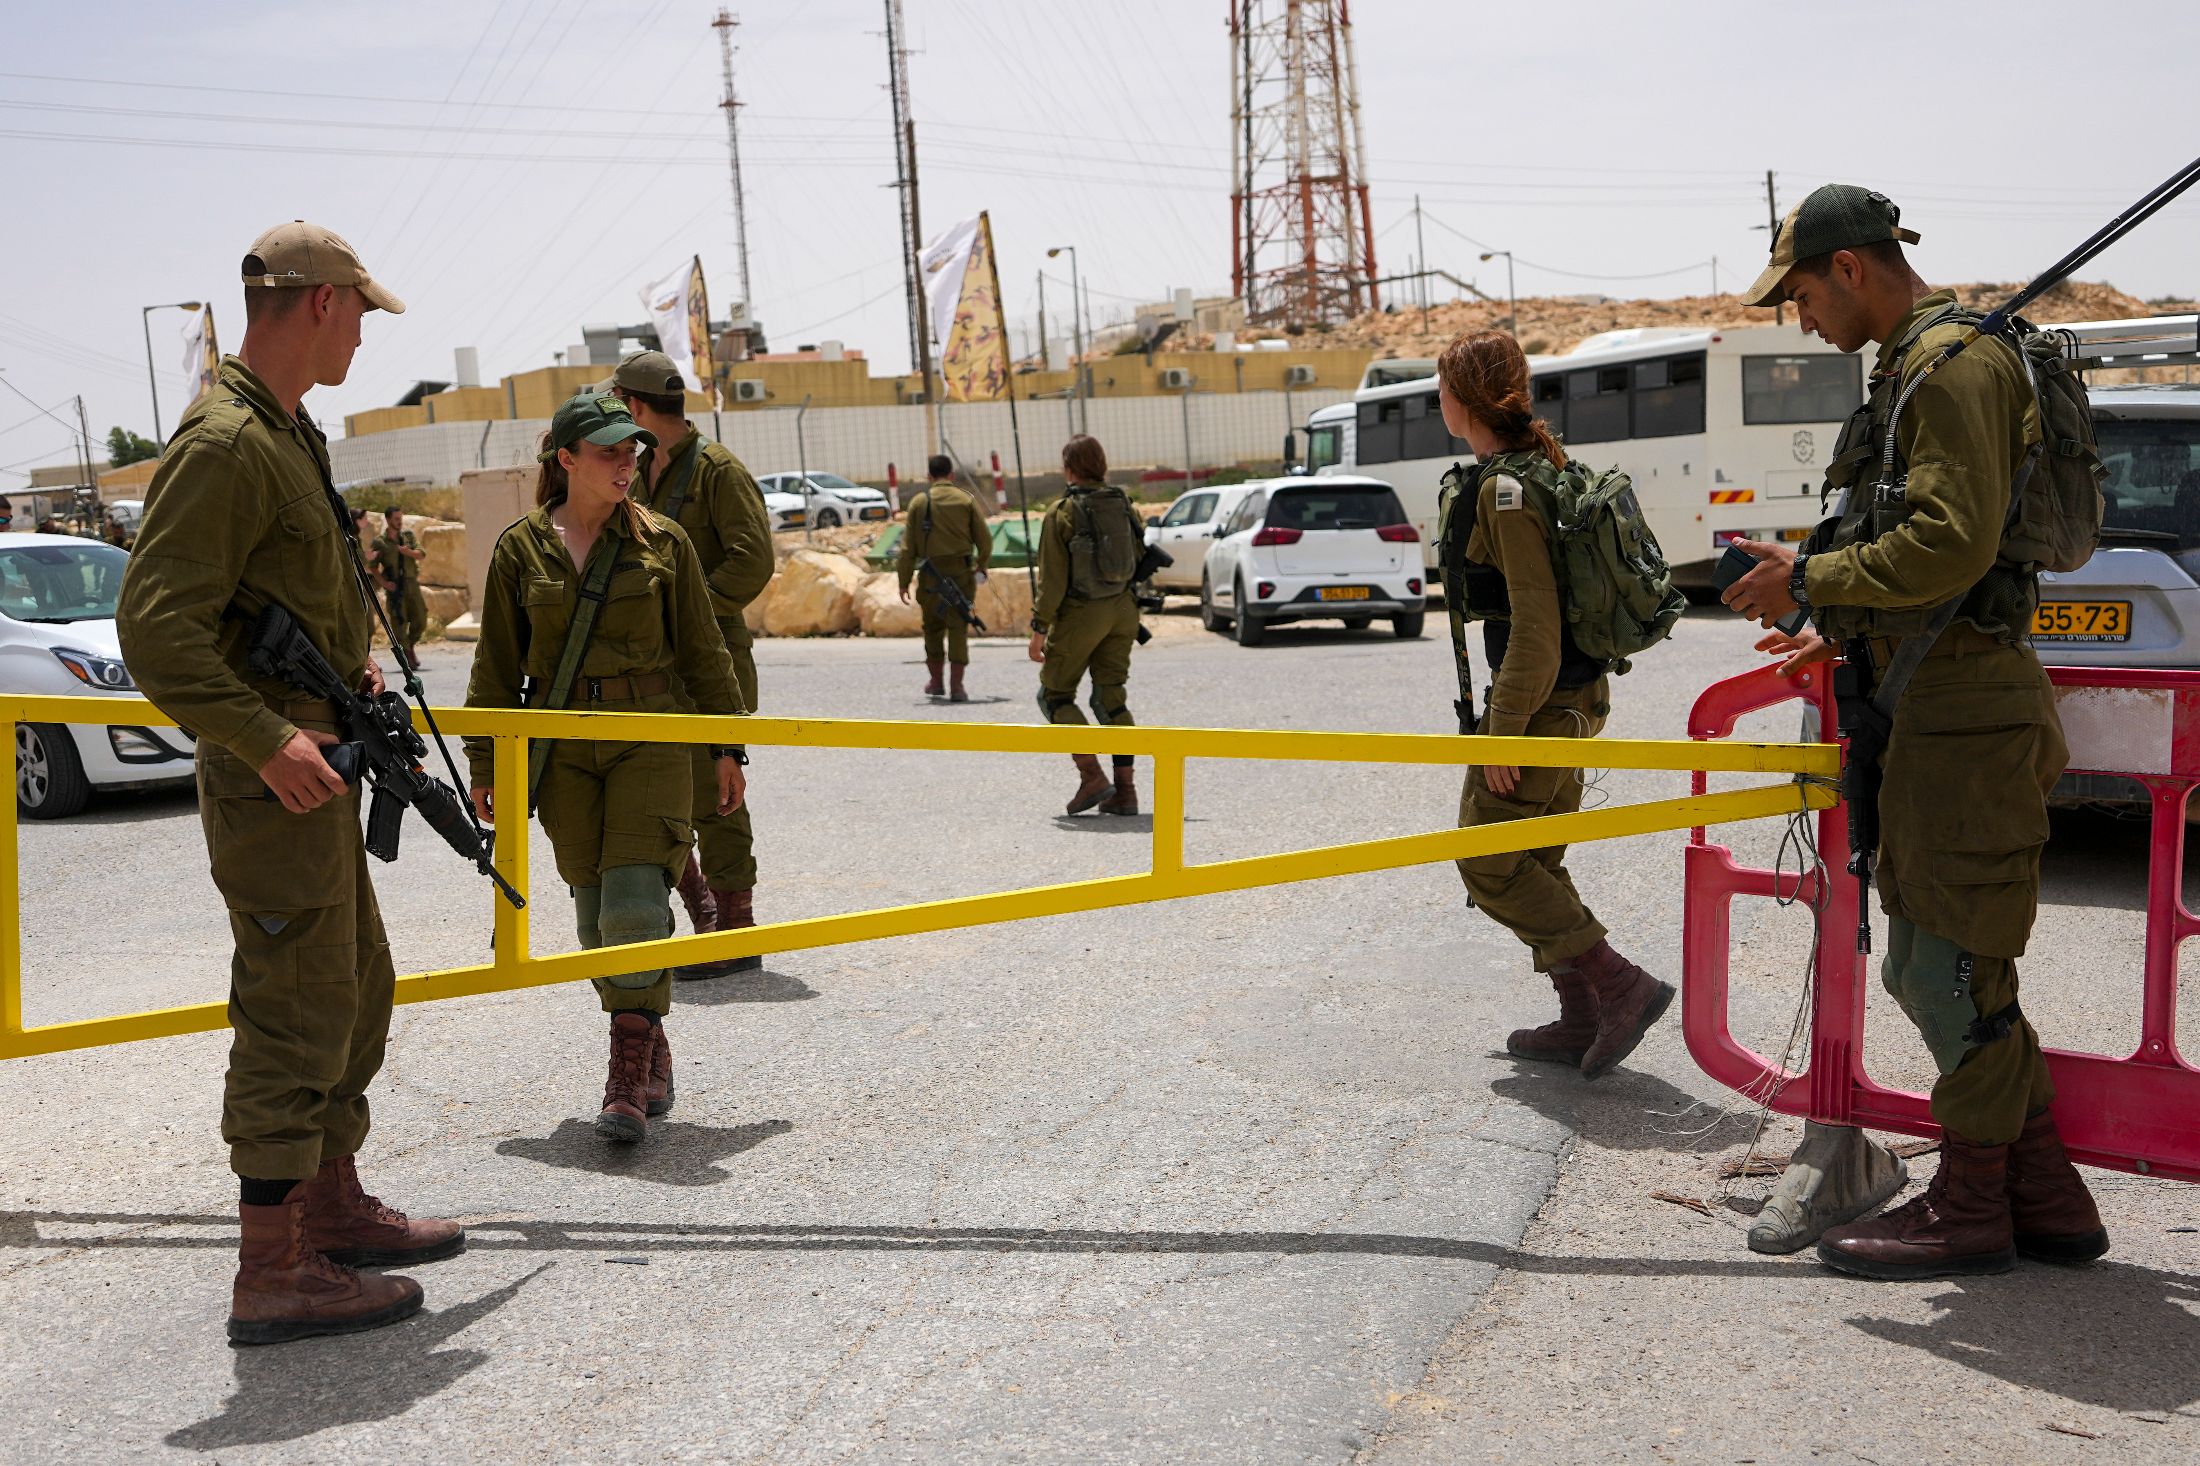 Incidens történt a határon, három izraeli katona és egy egyiptomi rendőr meghalt – Liner.hu